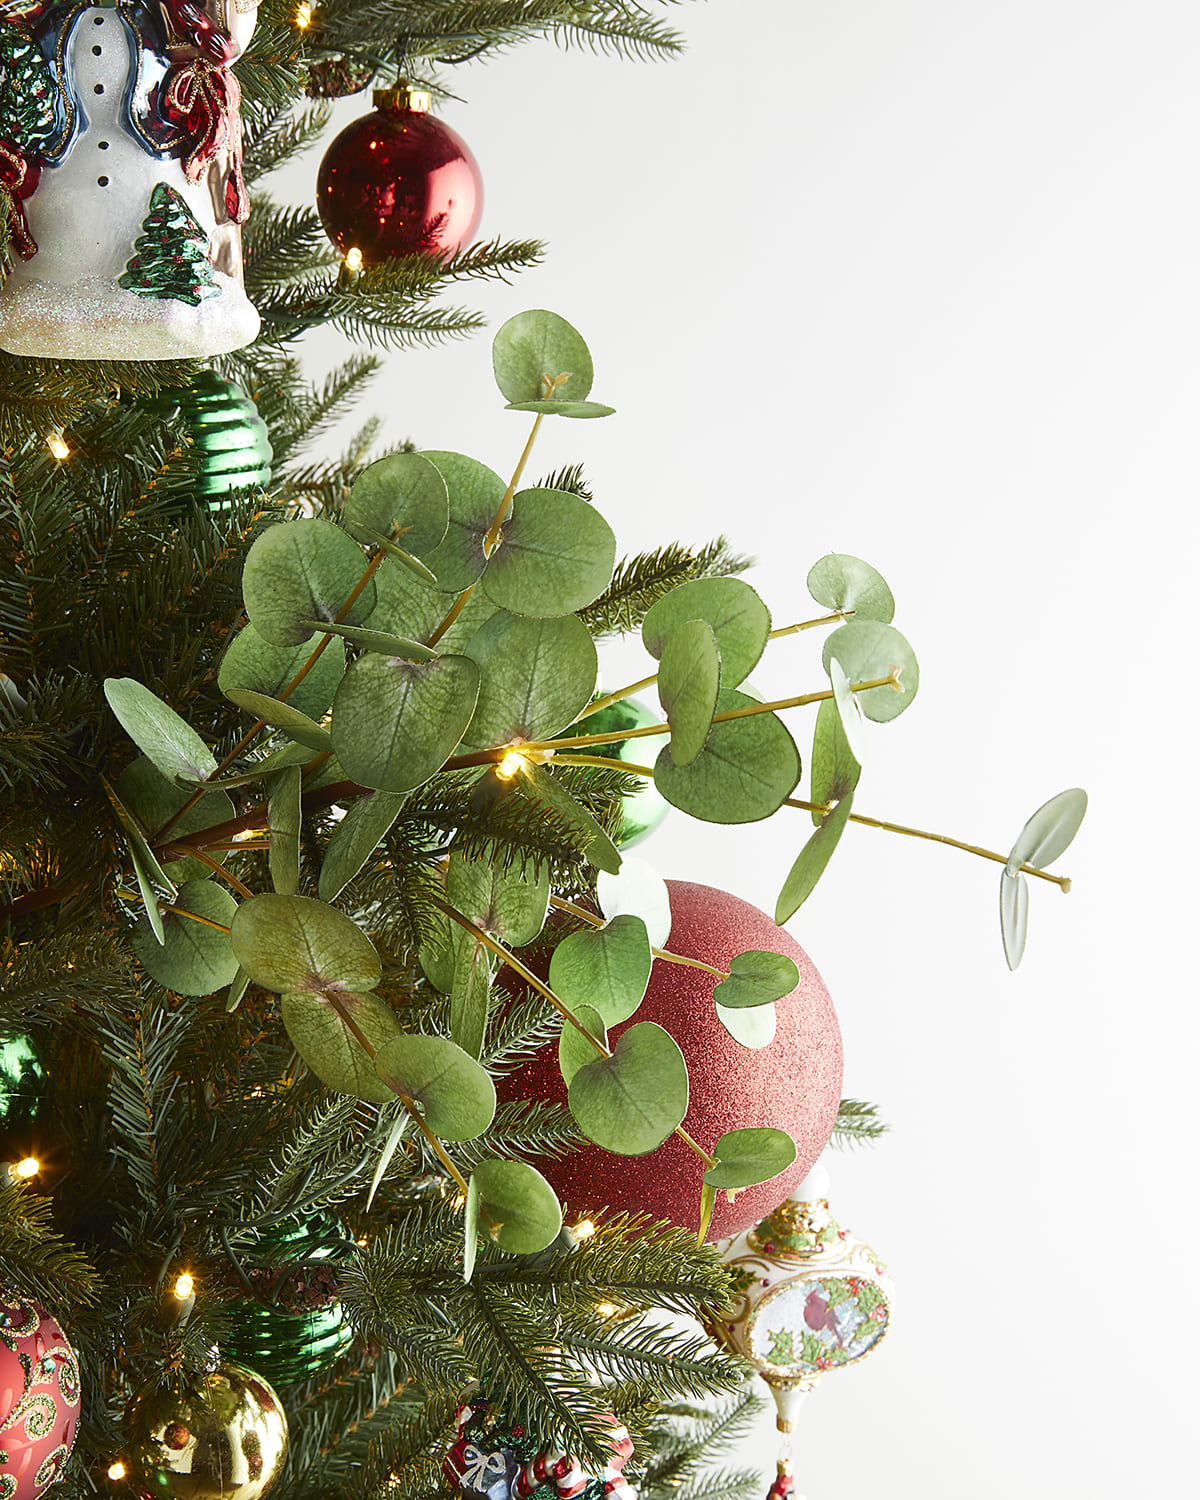 12 Best Christmas Wreaths 2019 — Christmas Wreath Ideas